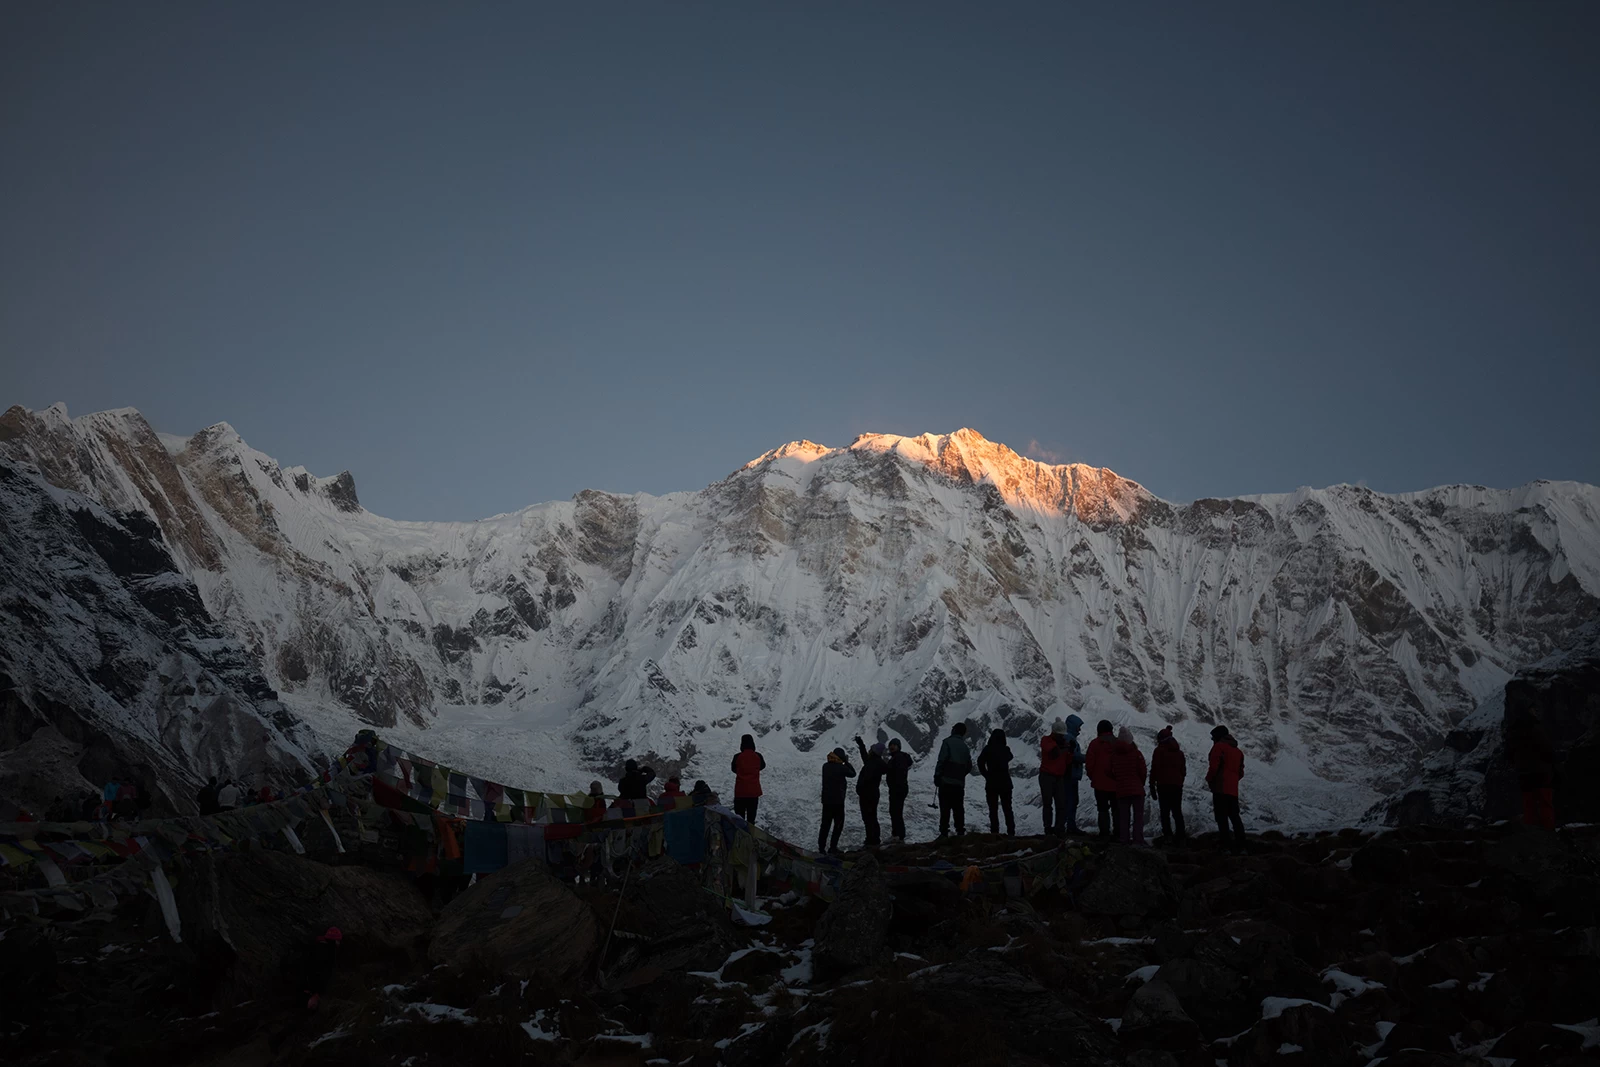  Sun Rise moment at Annapurna Base Camp. 